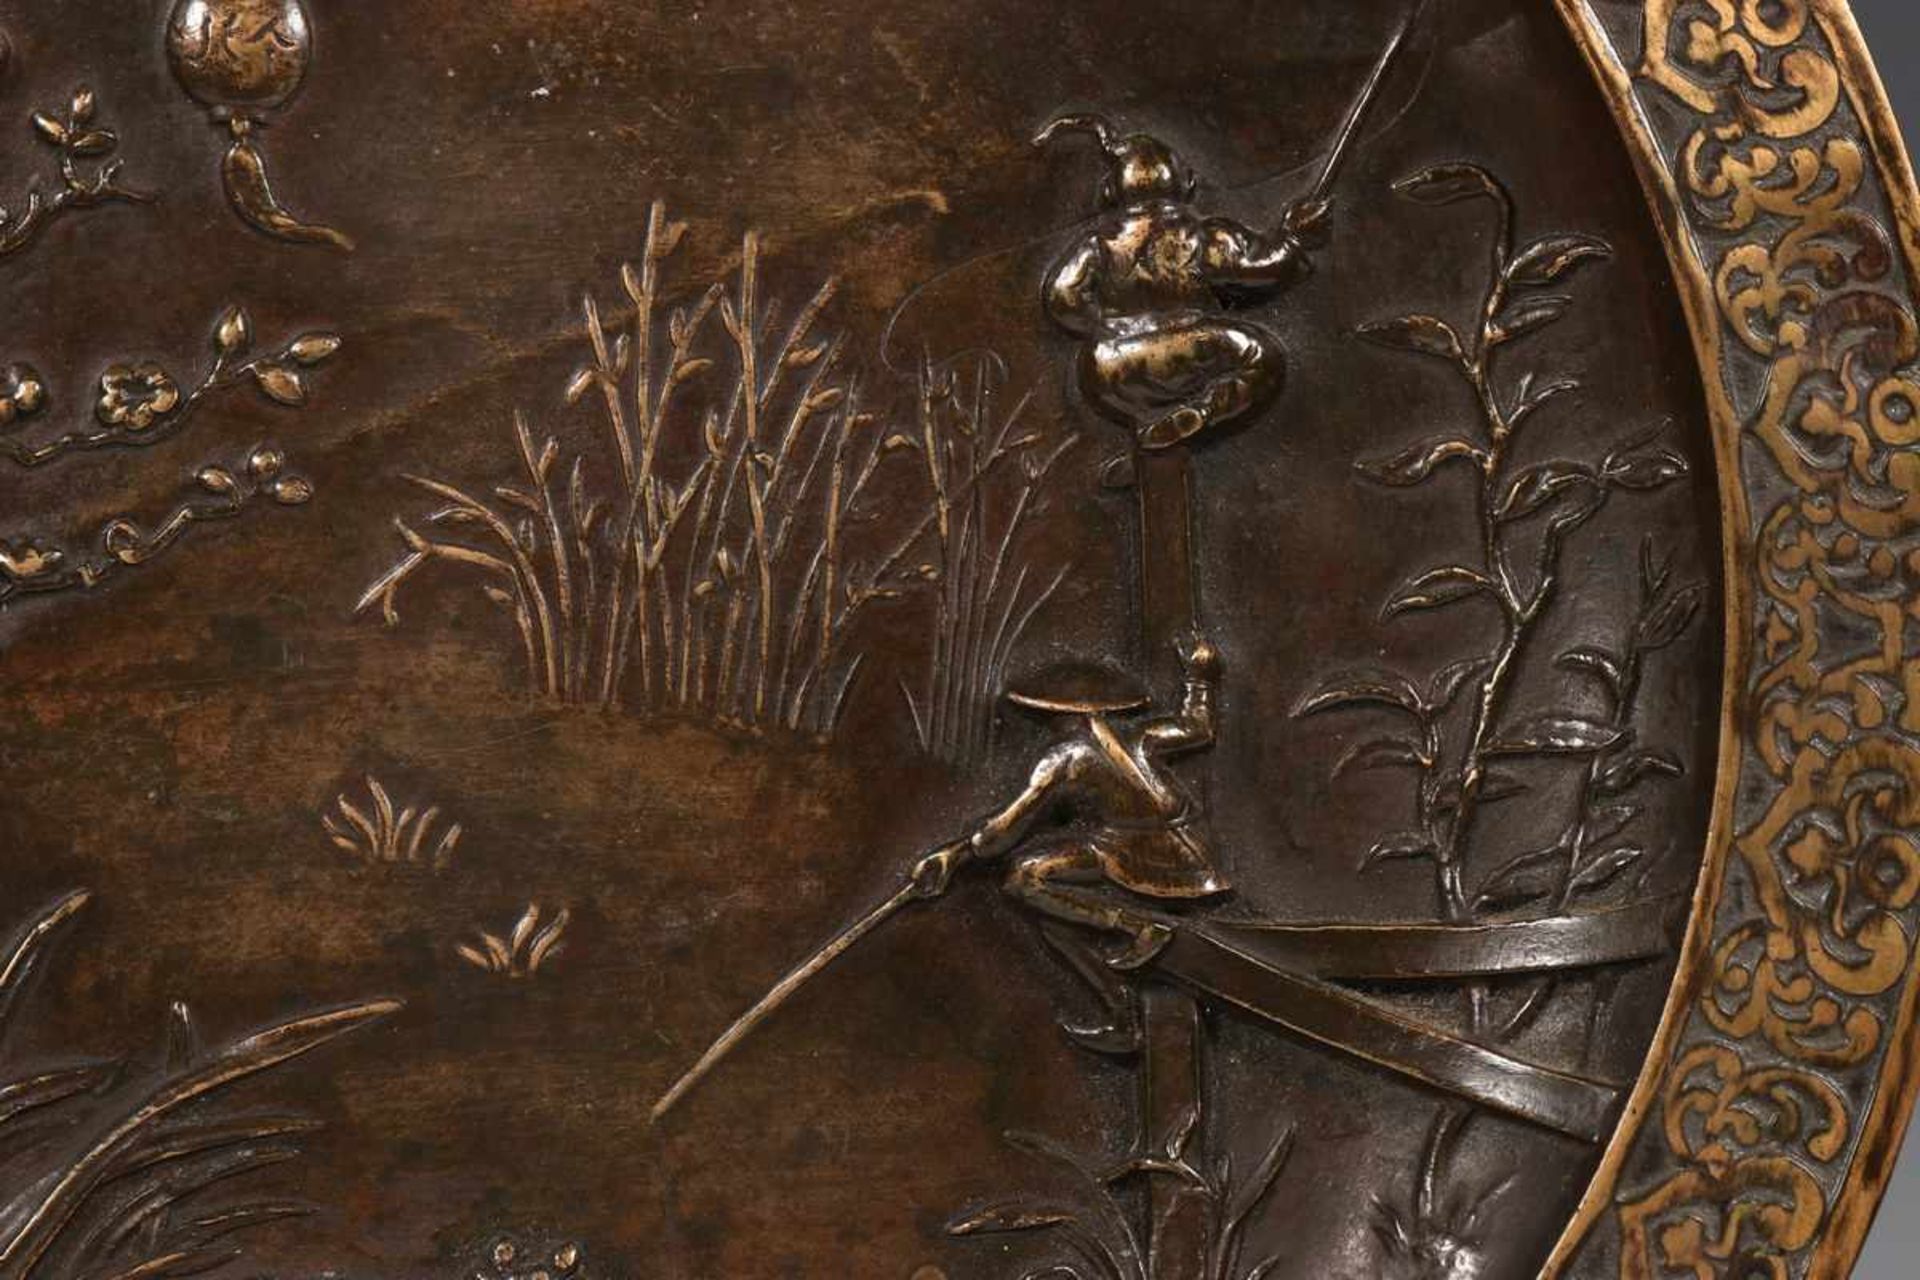 Belgie, bronzen wandschotel, begin 20e eeuw,met Chinoiserie relief van vissers aan waterkant. - Bild 2 aus 2